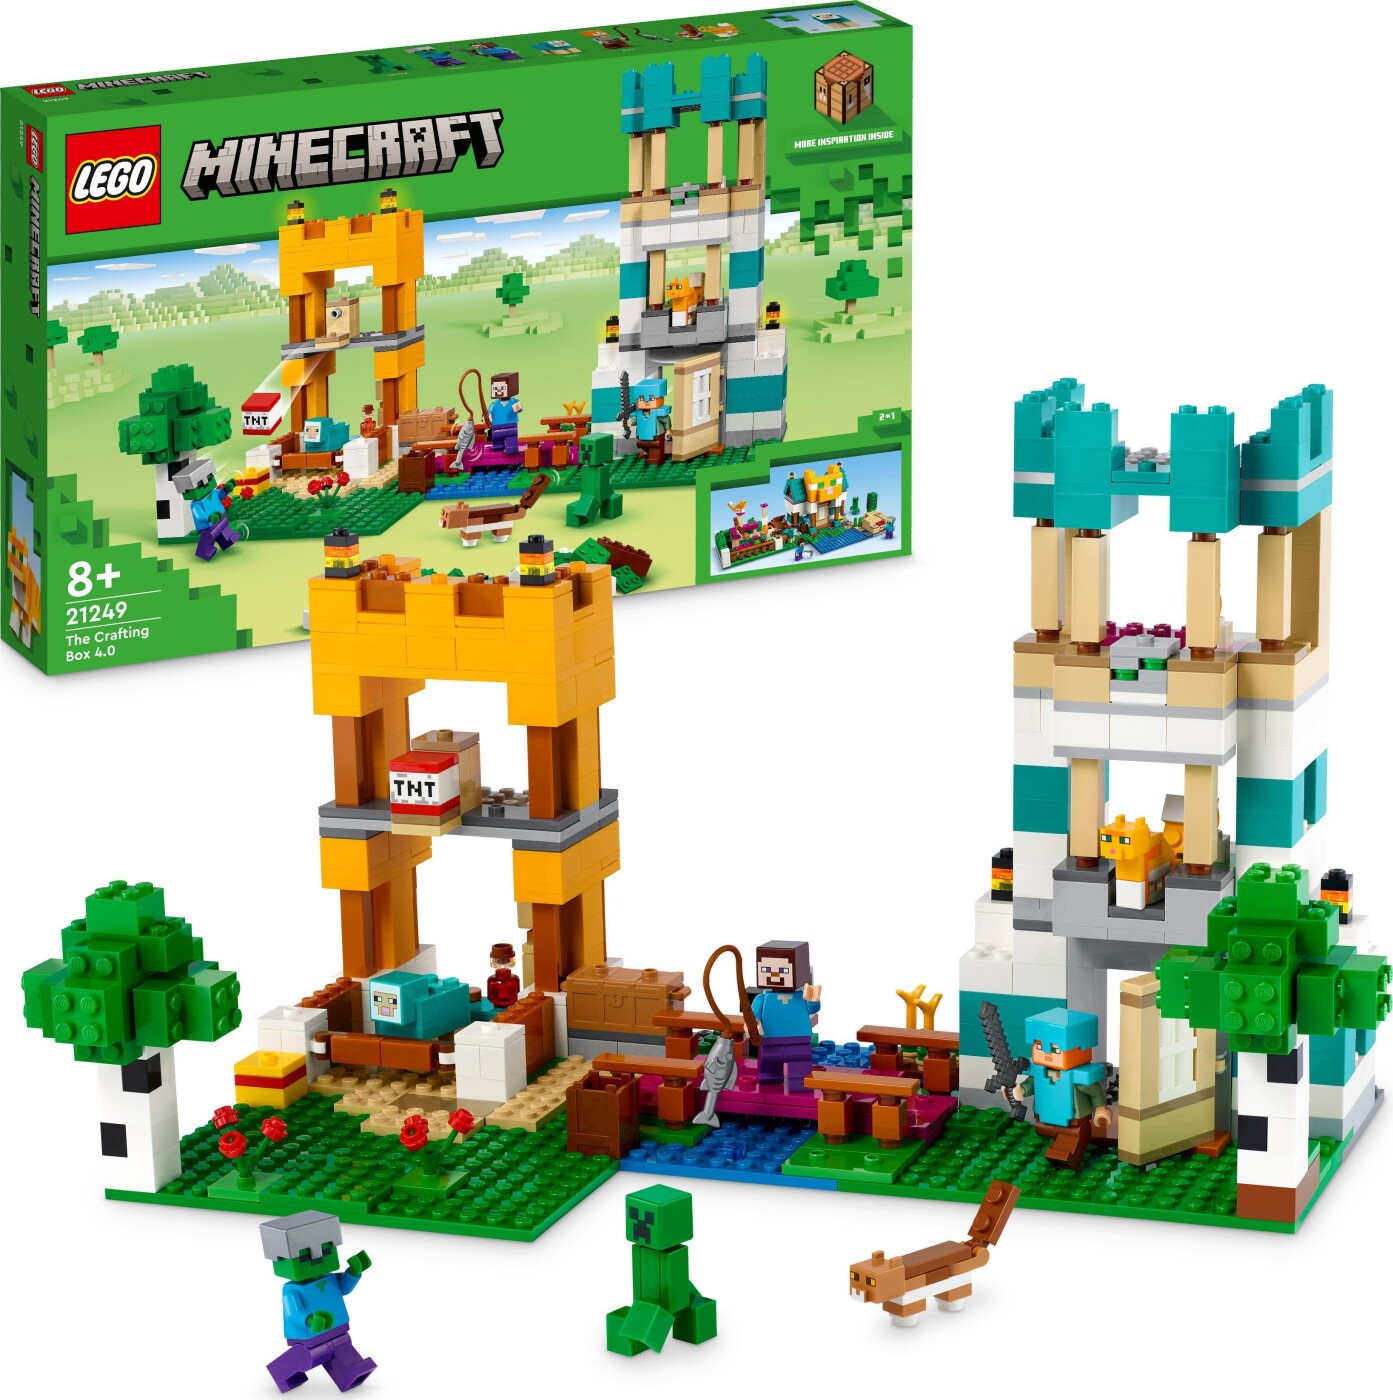 Billede af Lego Minecraft - Crafting-boks 4.0 - 21249 hos Gucca.dk